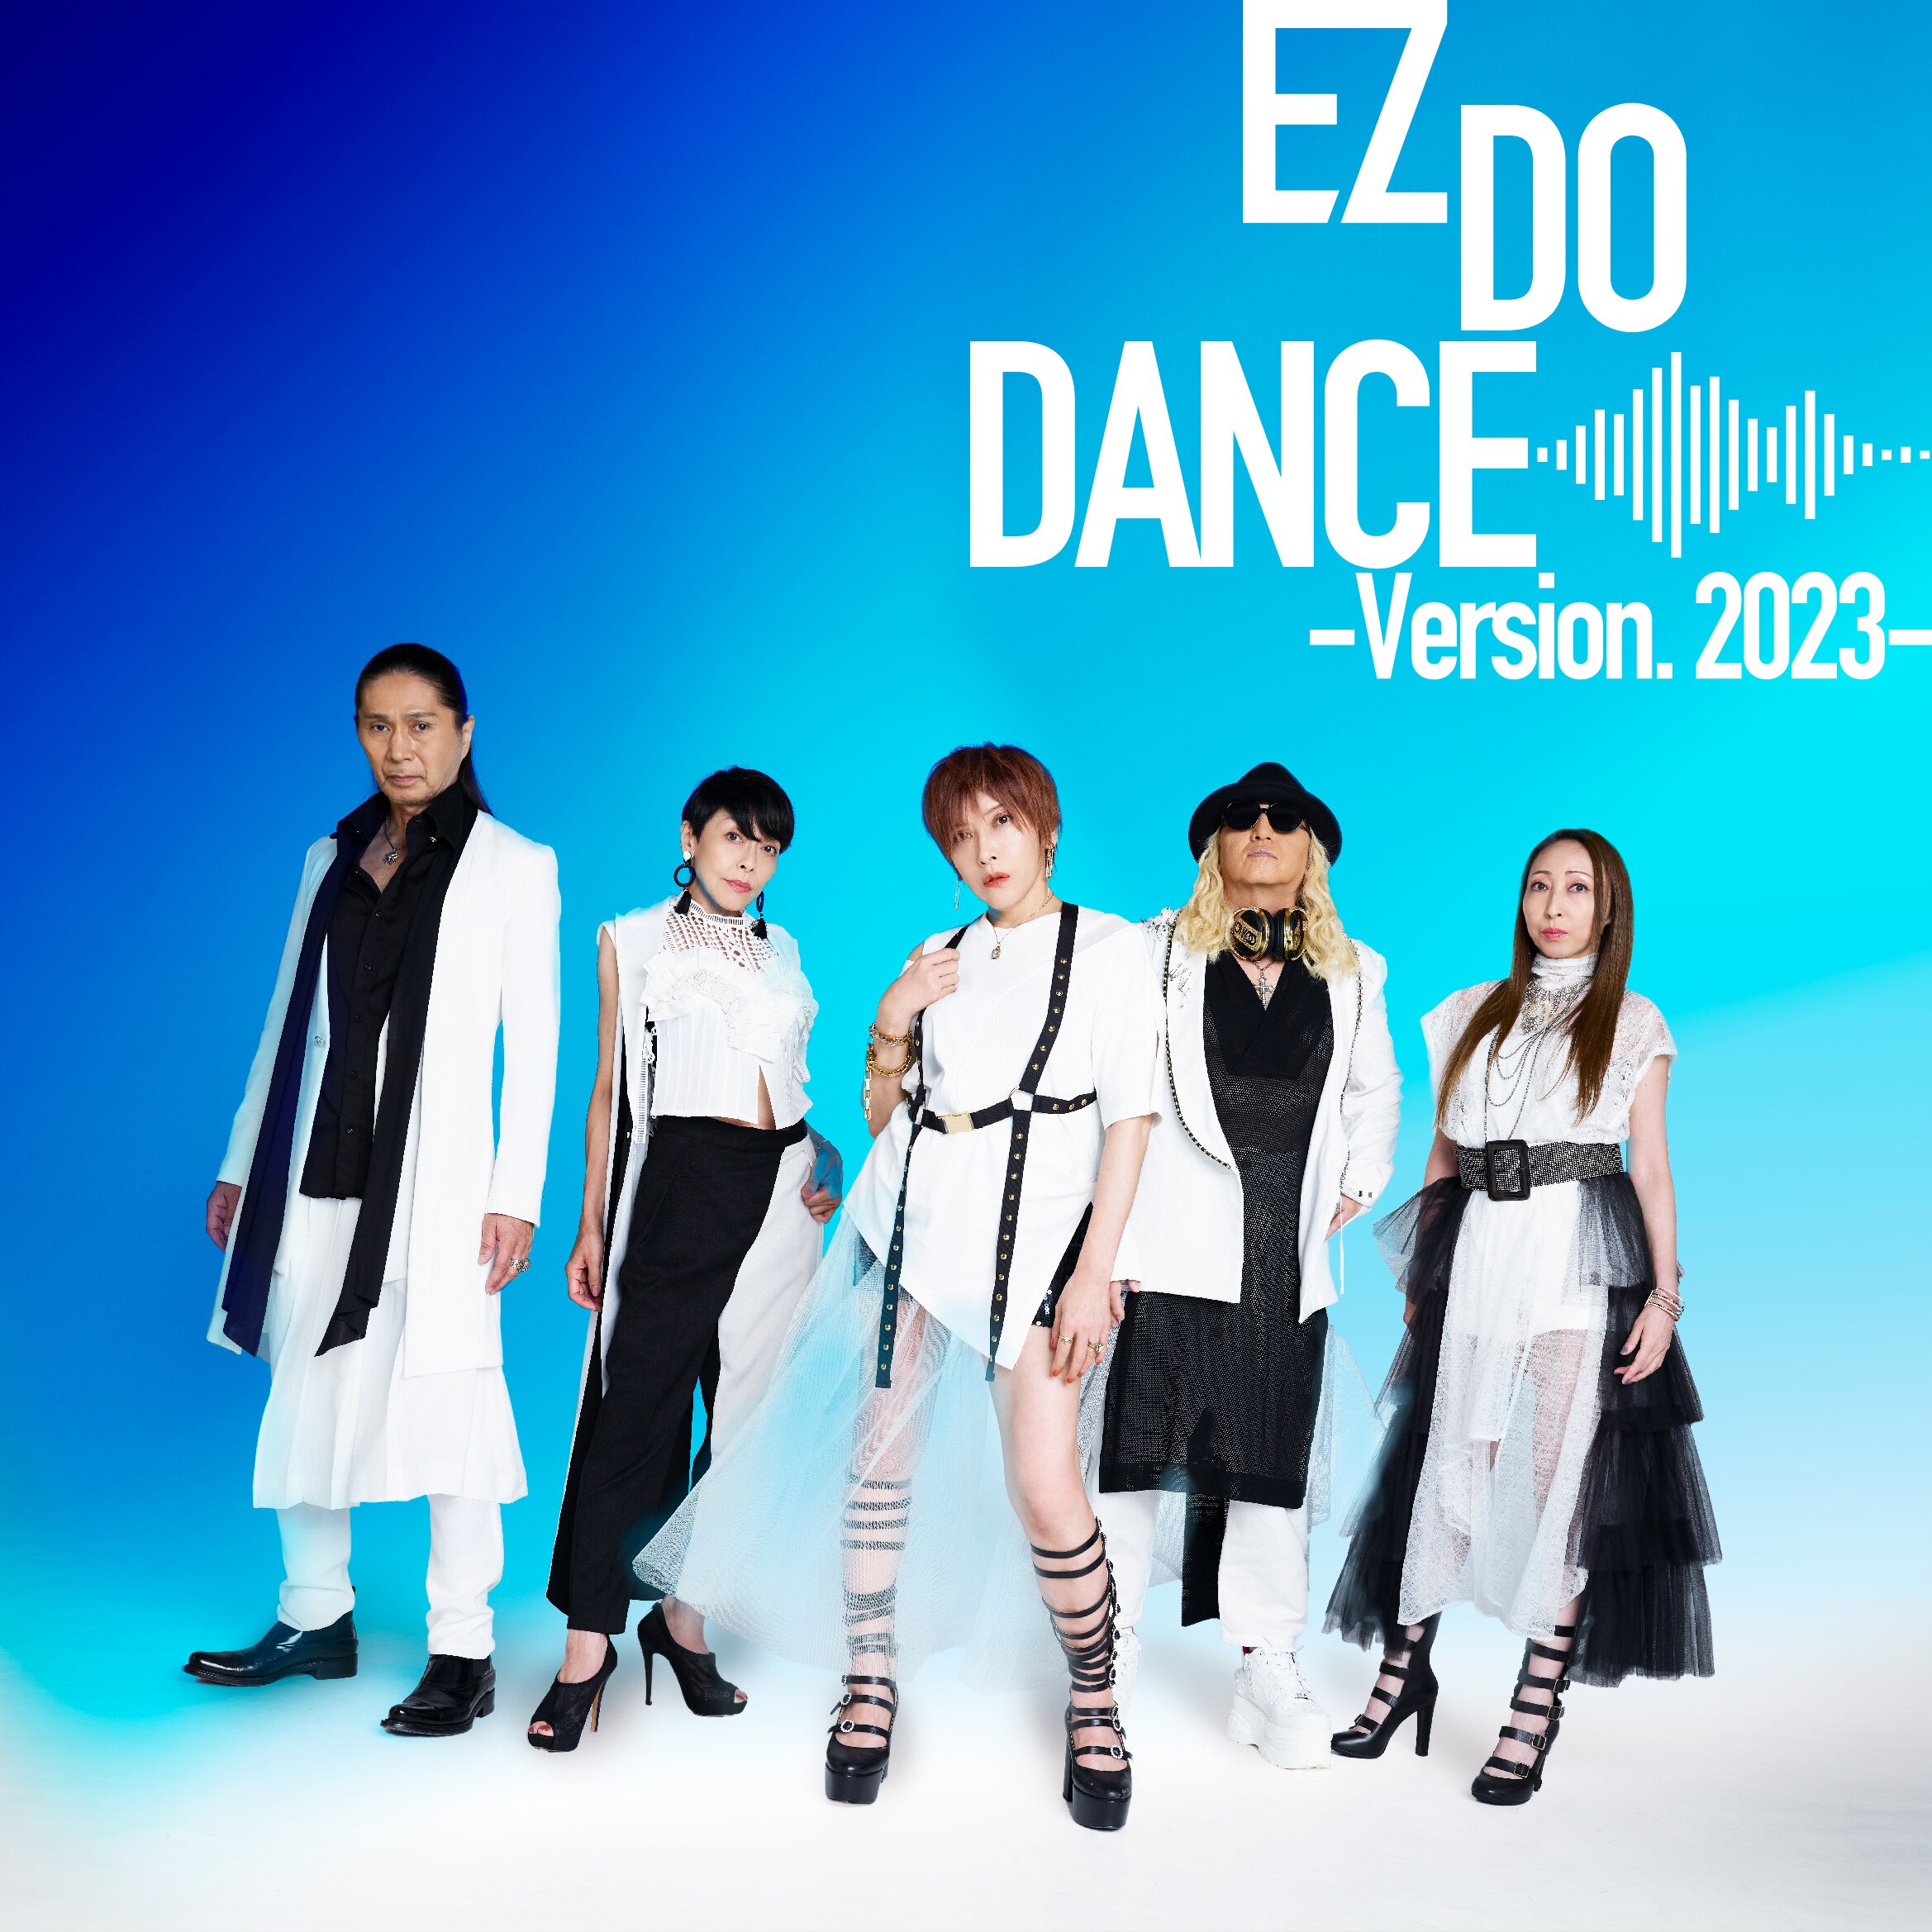 3月22日 EZ DO DANCE -Version.2023- 配信リリース決定!!【3月24日追加 